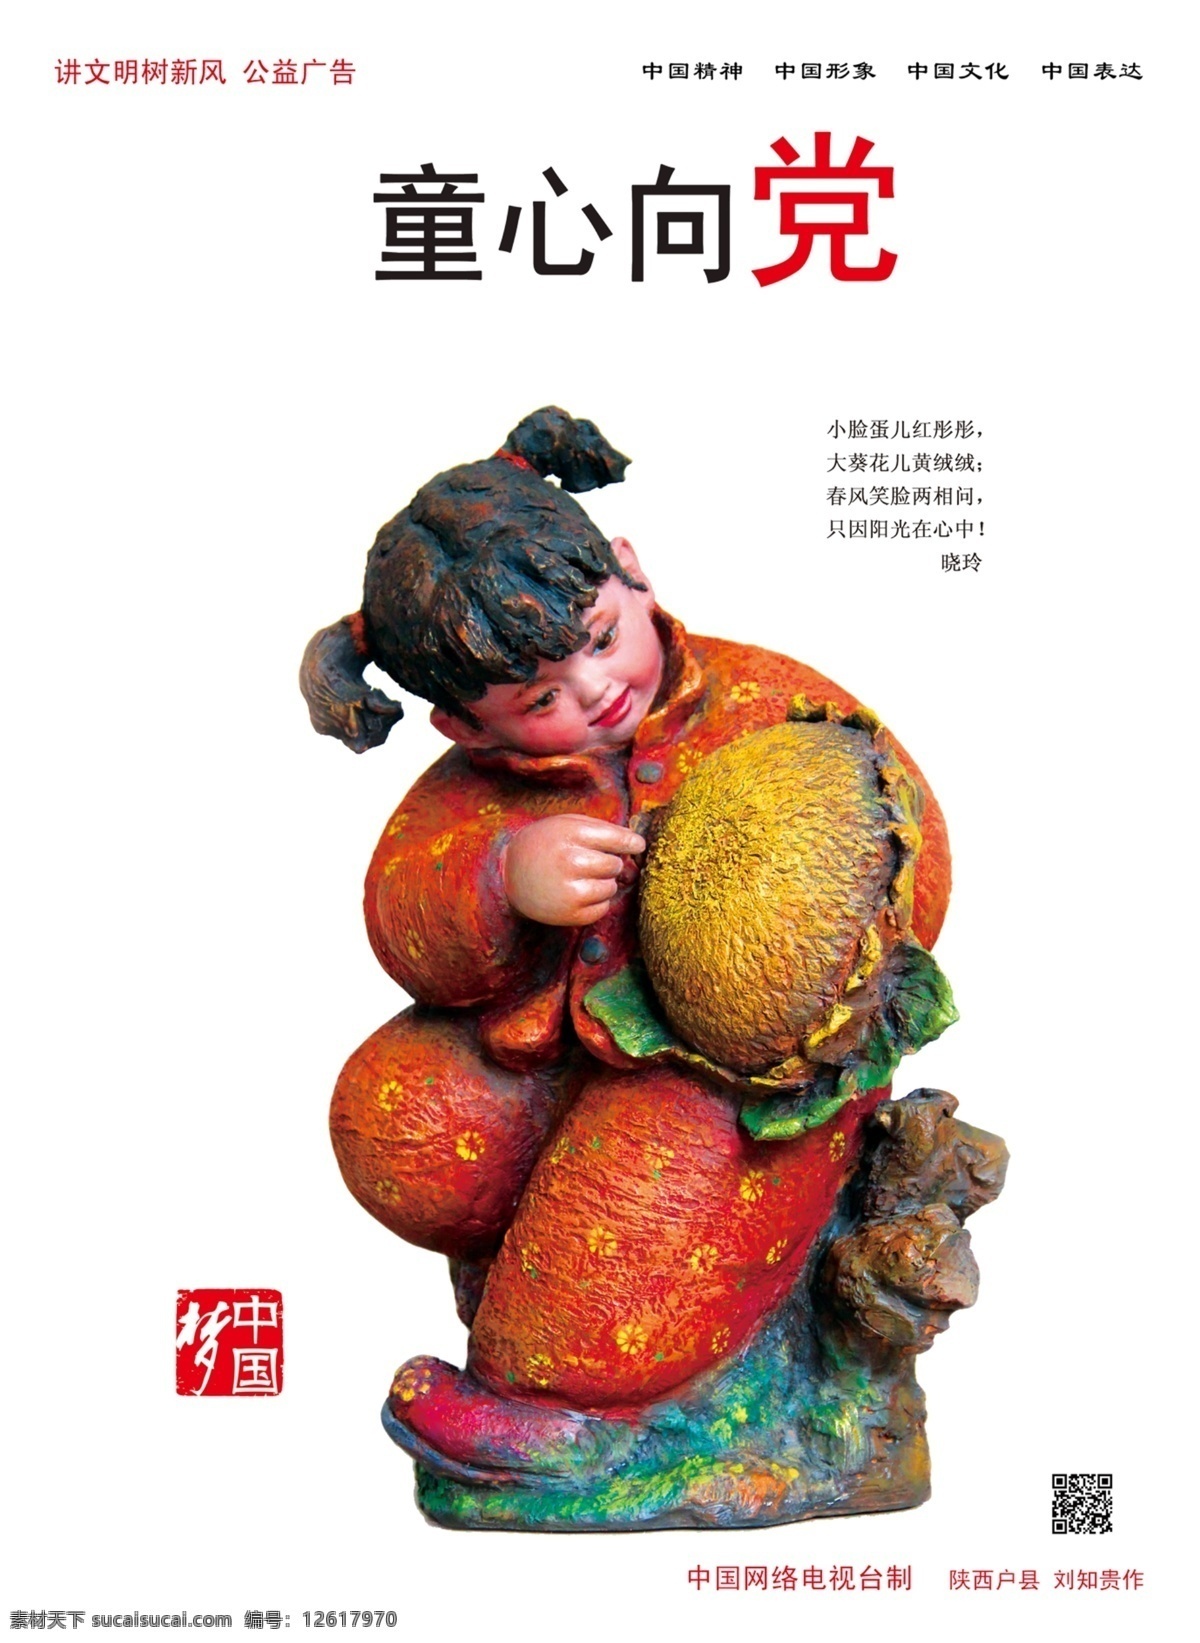 中国 梦 童心 党 宣传海报 儿童 公益广告 公益活动 讲文明树新风 中国梦 环保公益海报